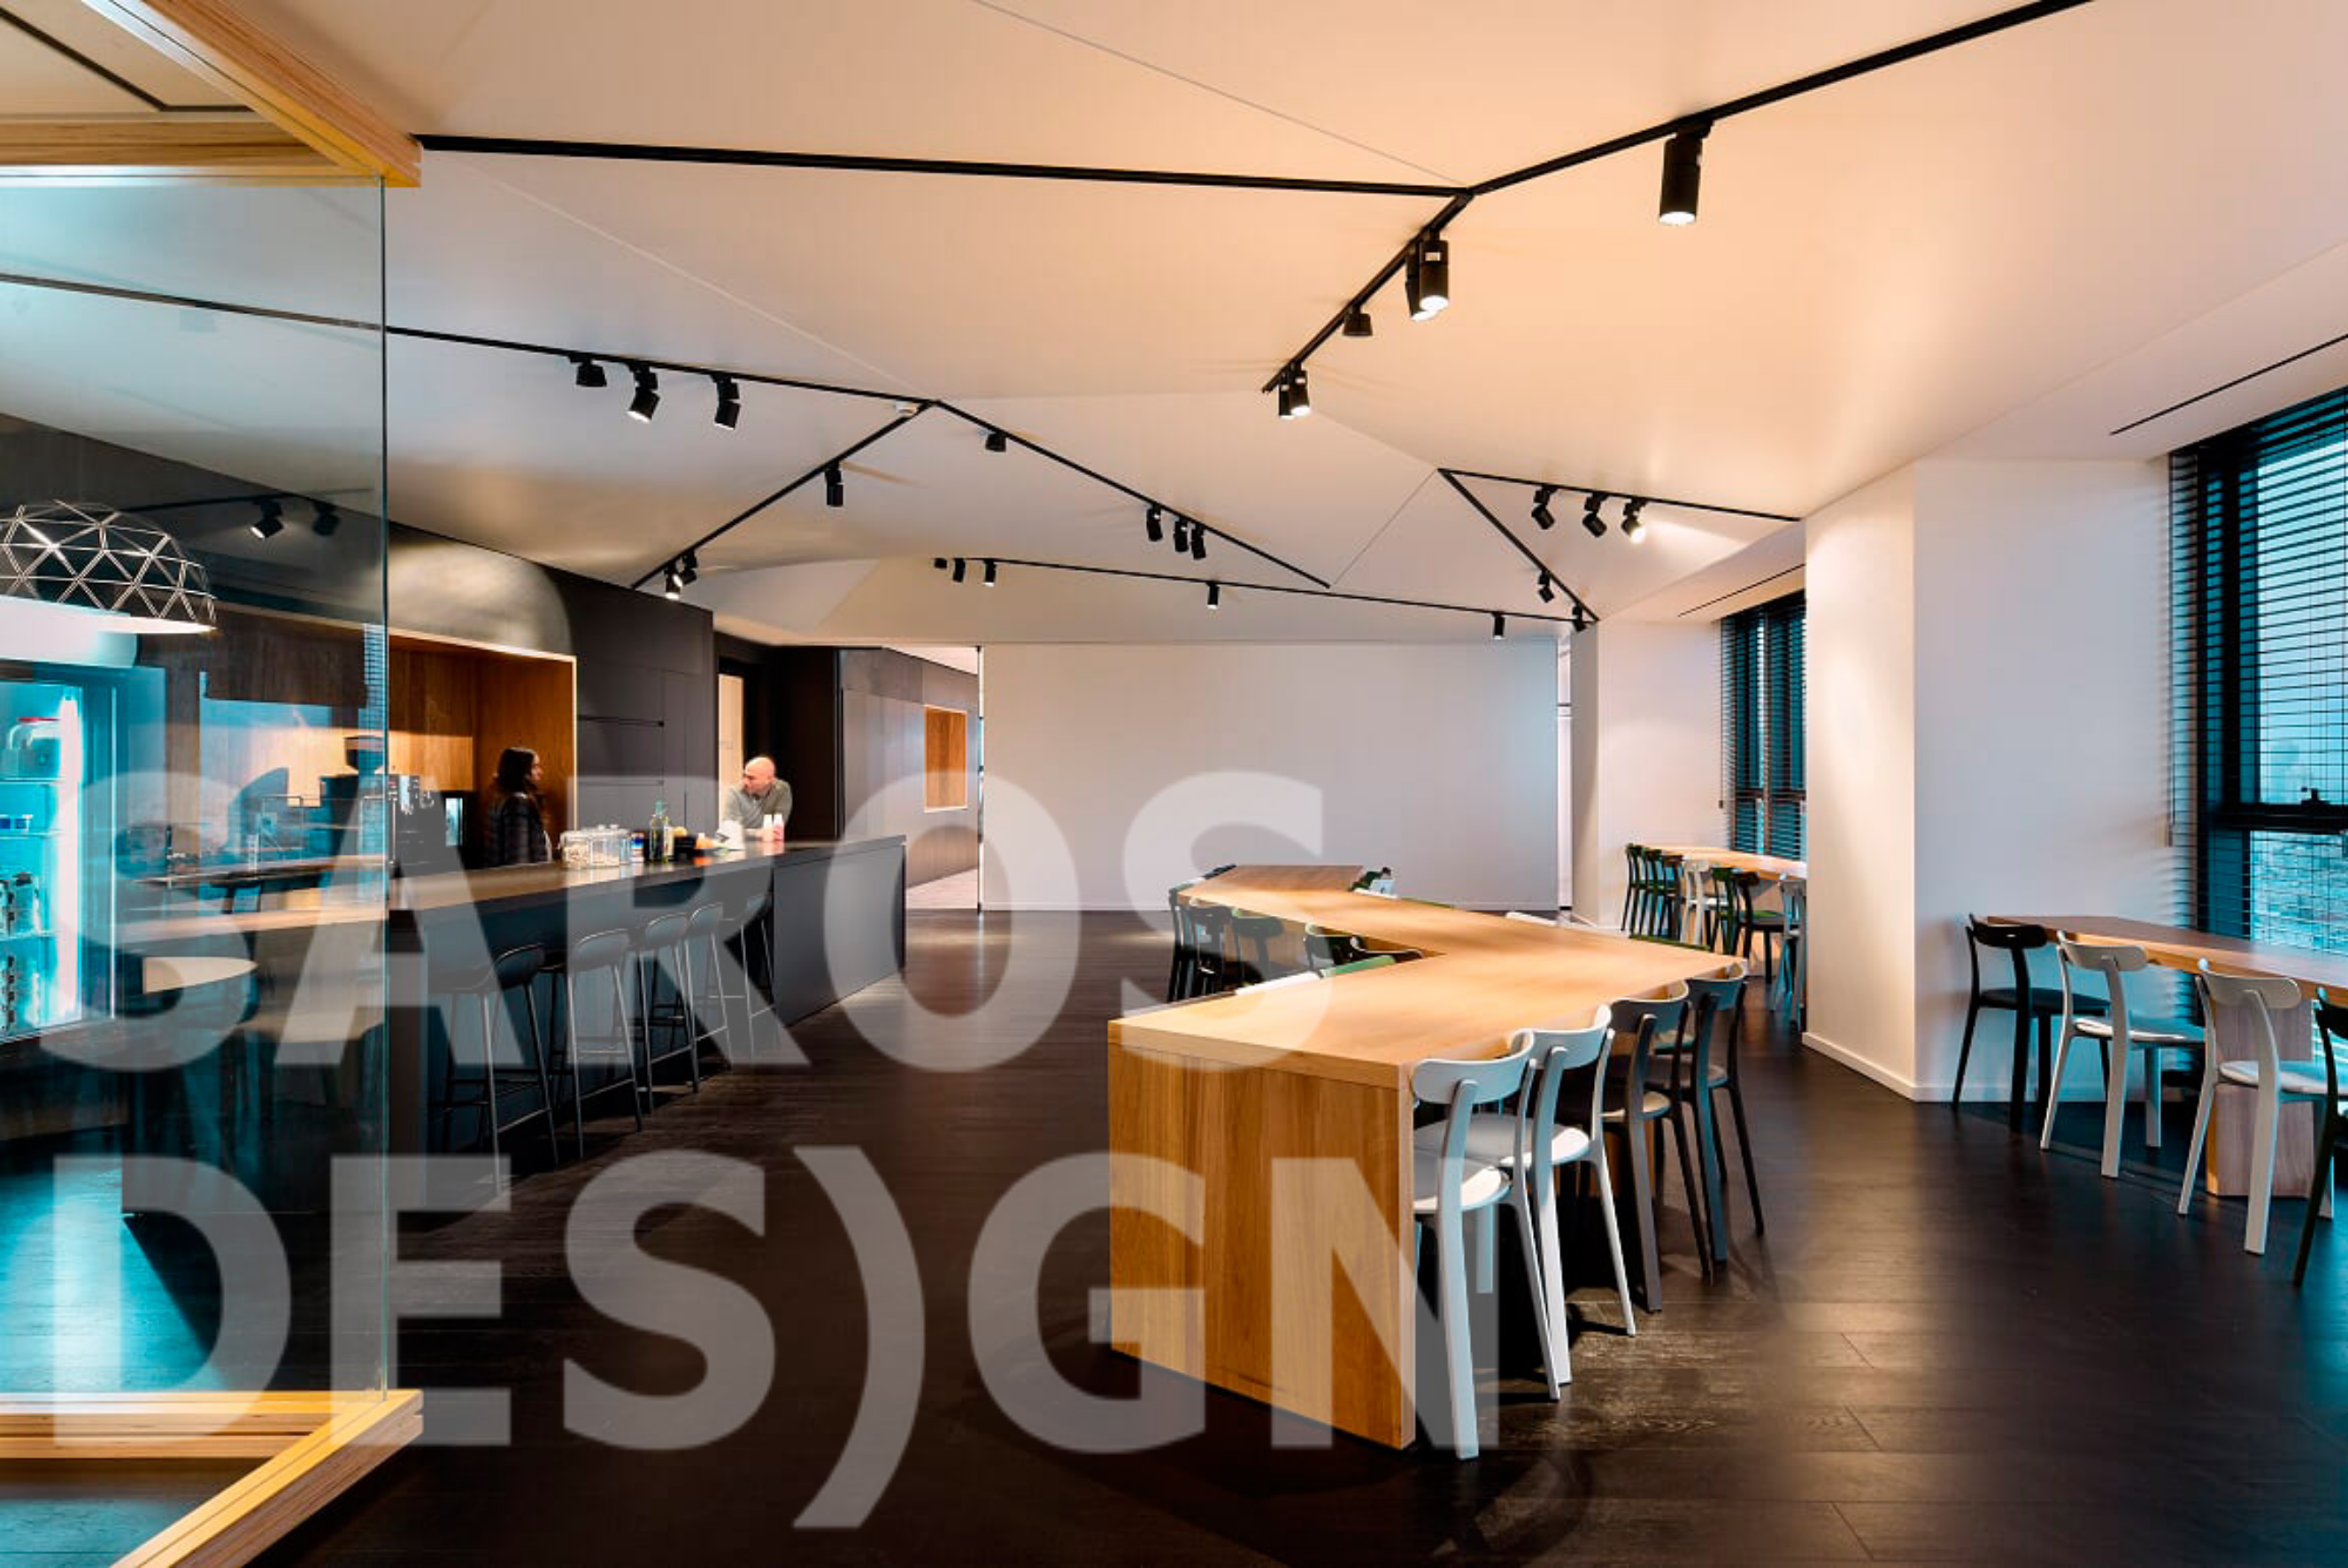 Cutout stretch ceilings from Saros Design — Saros Design